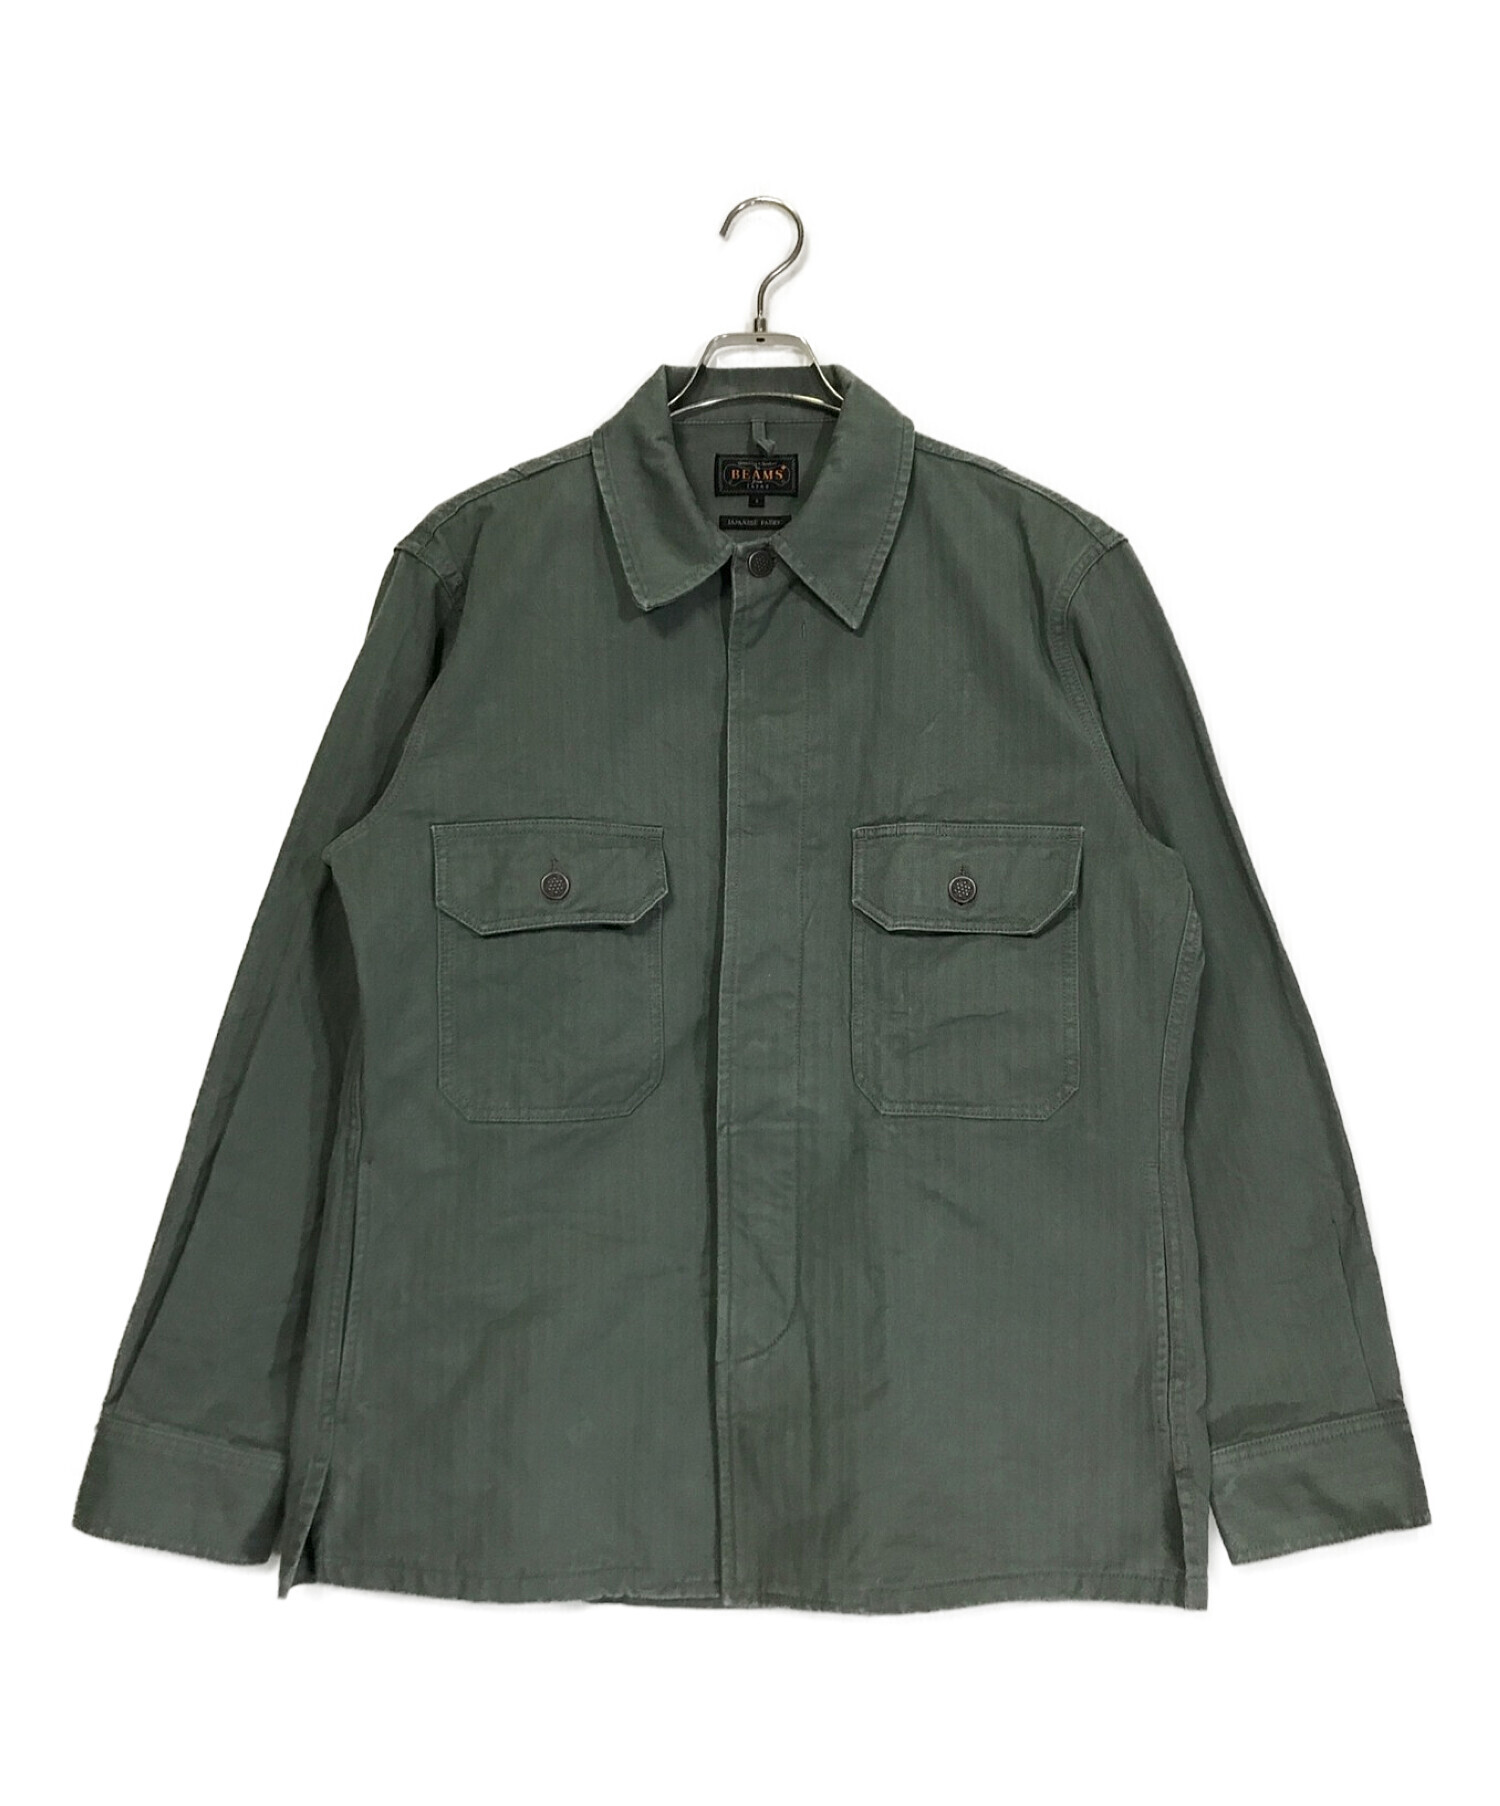 BEAMS PLUS (ビームスプラス) ヘリンボーン ミリタリーシャツジャケット グリーン サイズ:S